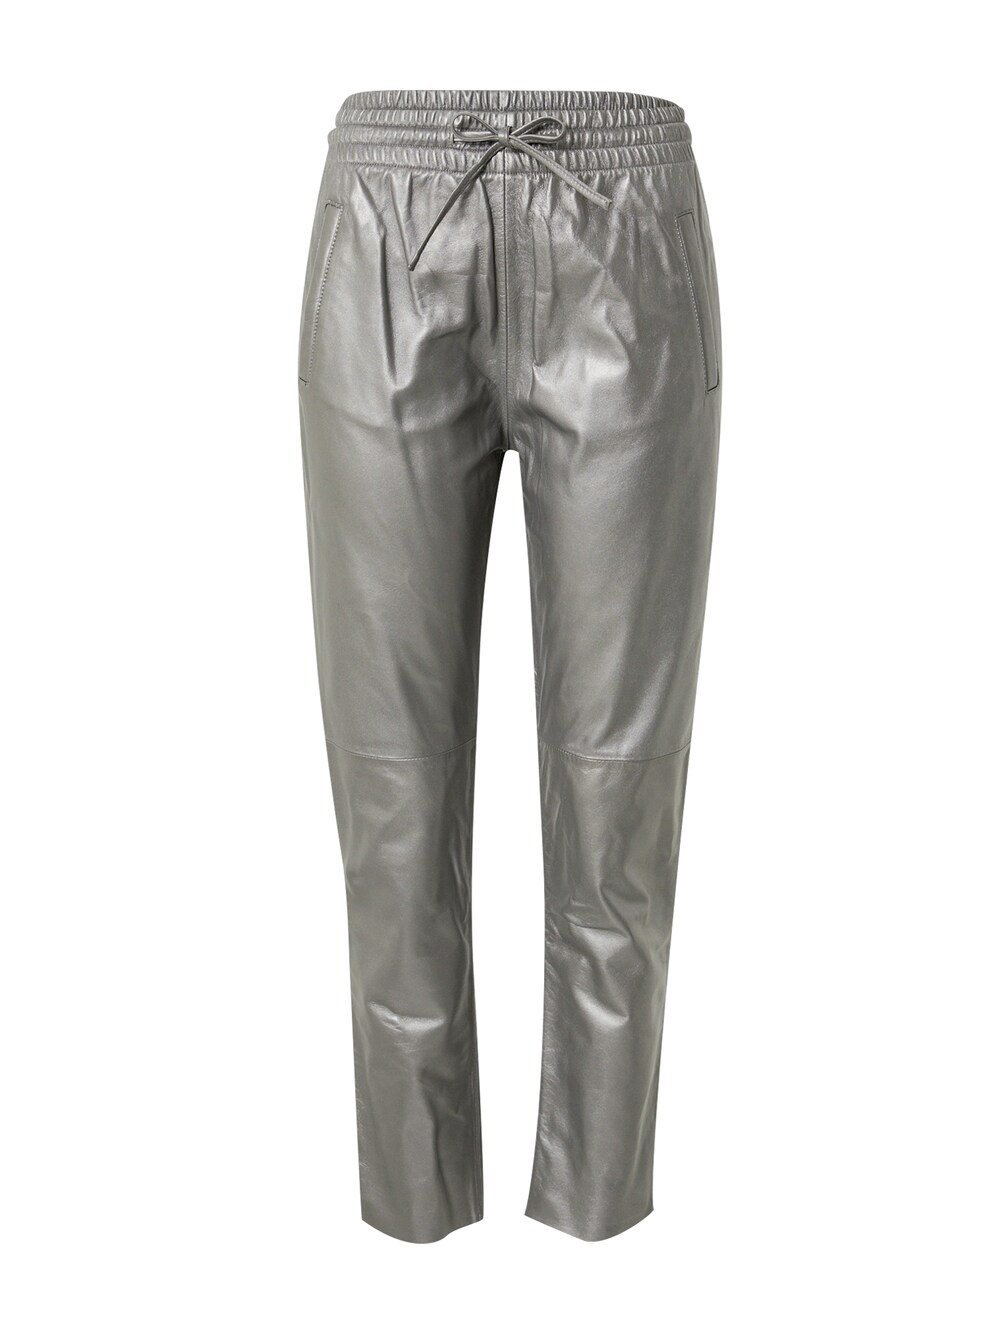 Обычные брюки OAKWOOD GIFT, серебристо-серый